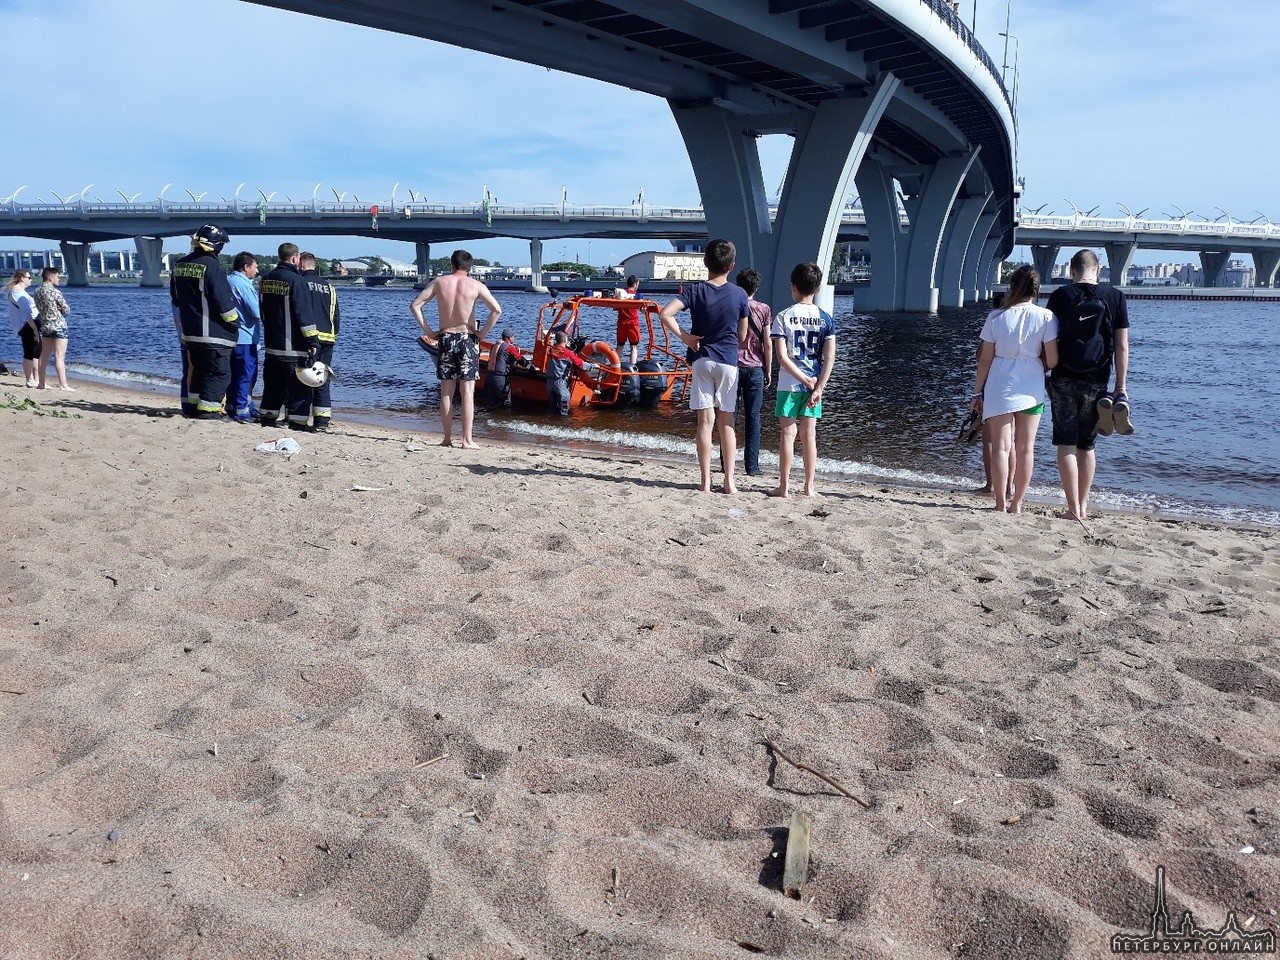 С Яхтенного моста прыгнул подросток – спасти не удалось Через 20 минут водолазы достали на берег тел...